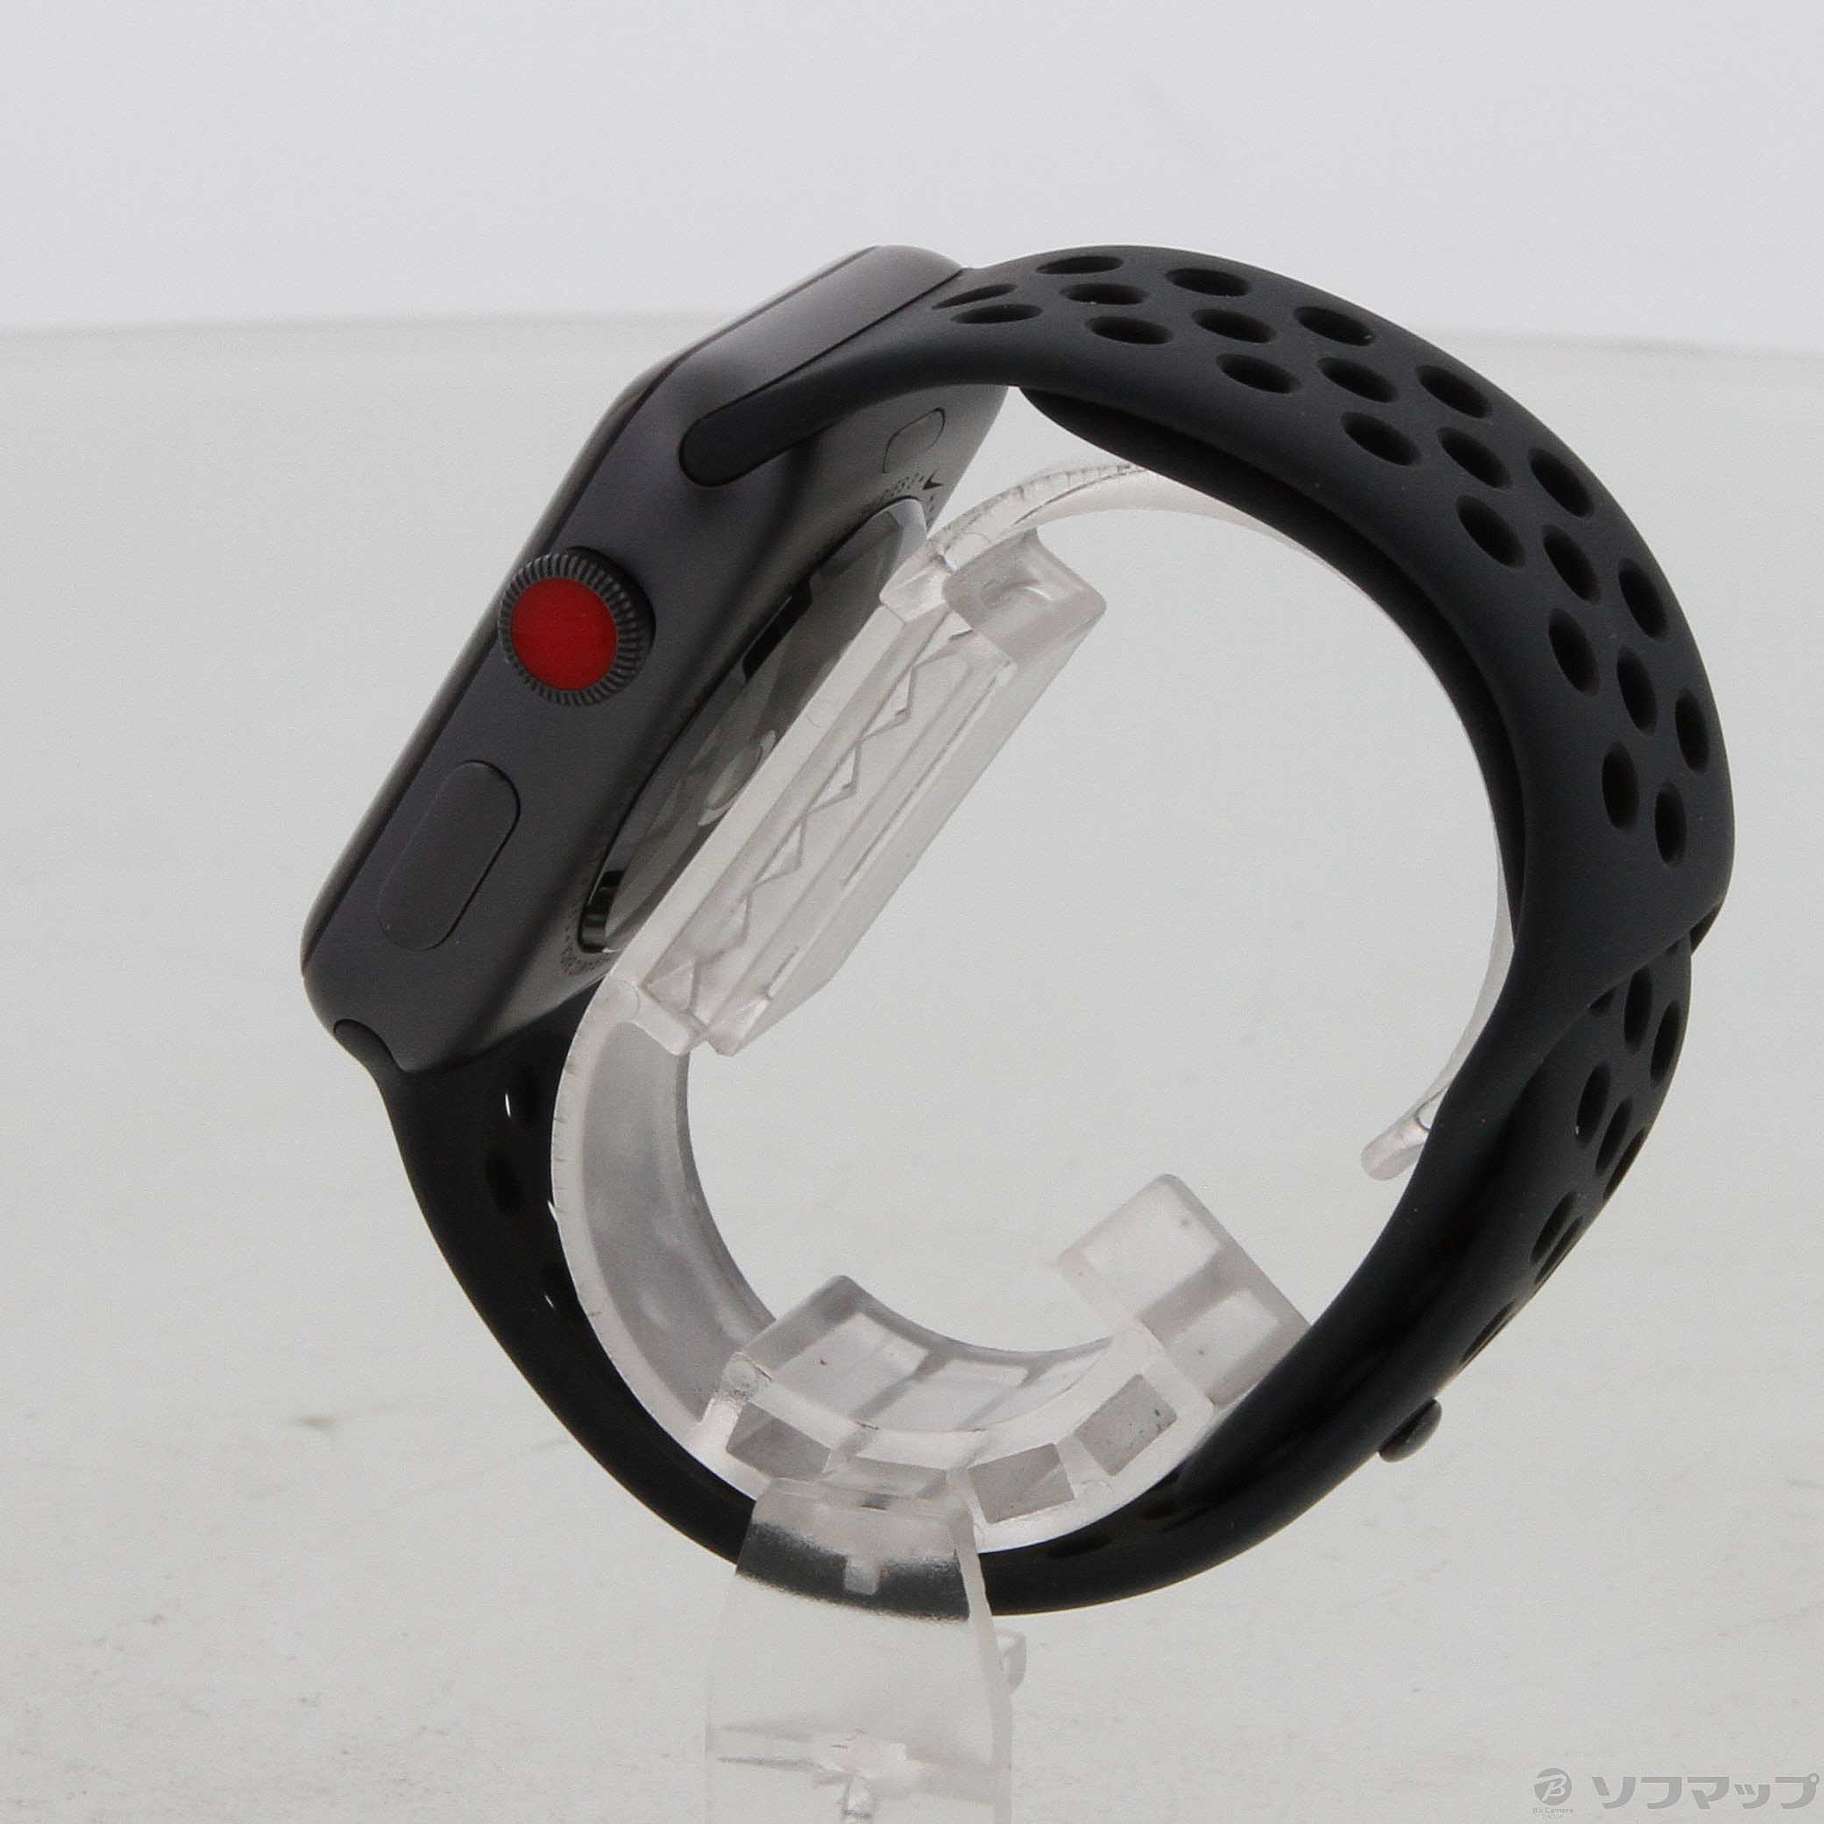 中古】Apple Watch Series 3 GPS + Cellular 42mm スペースグレイ 